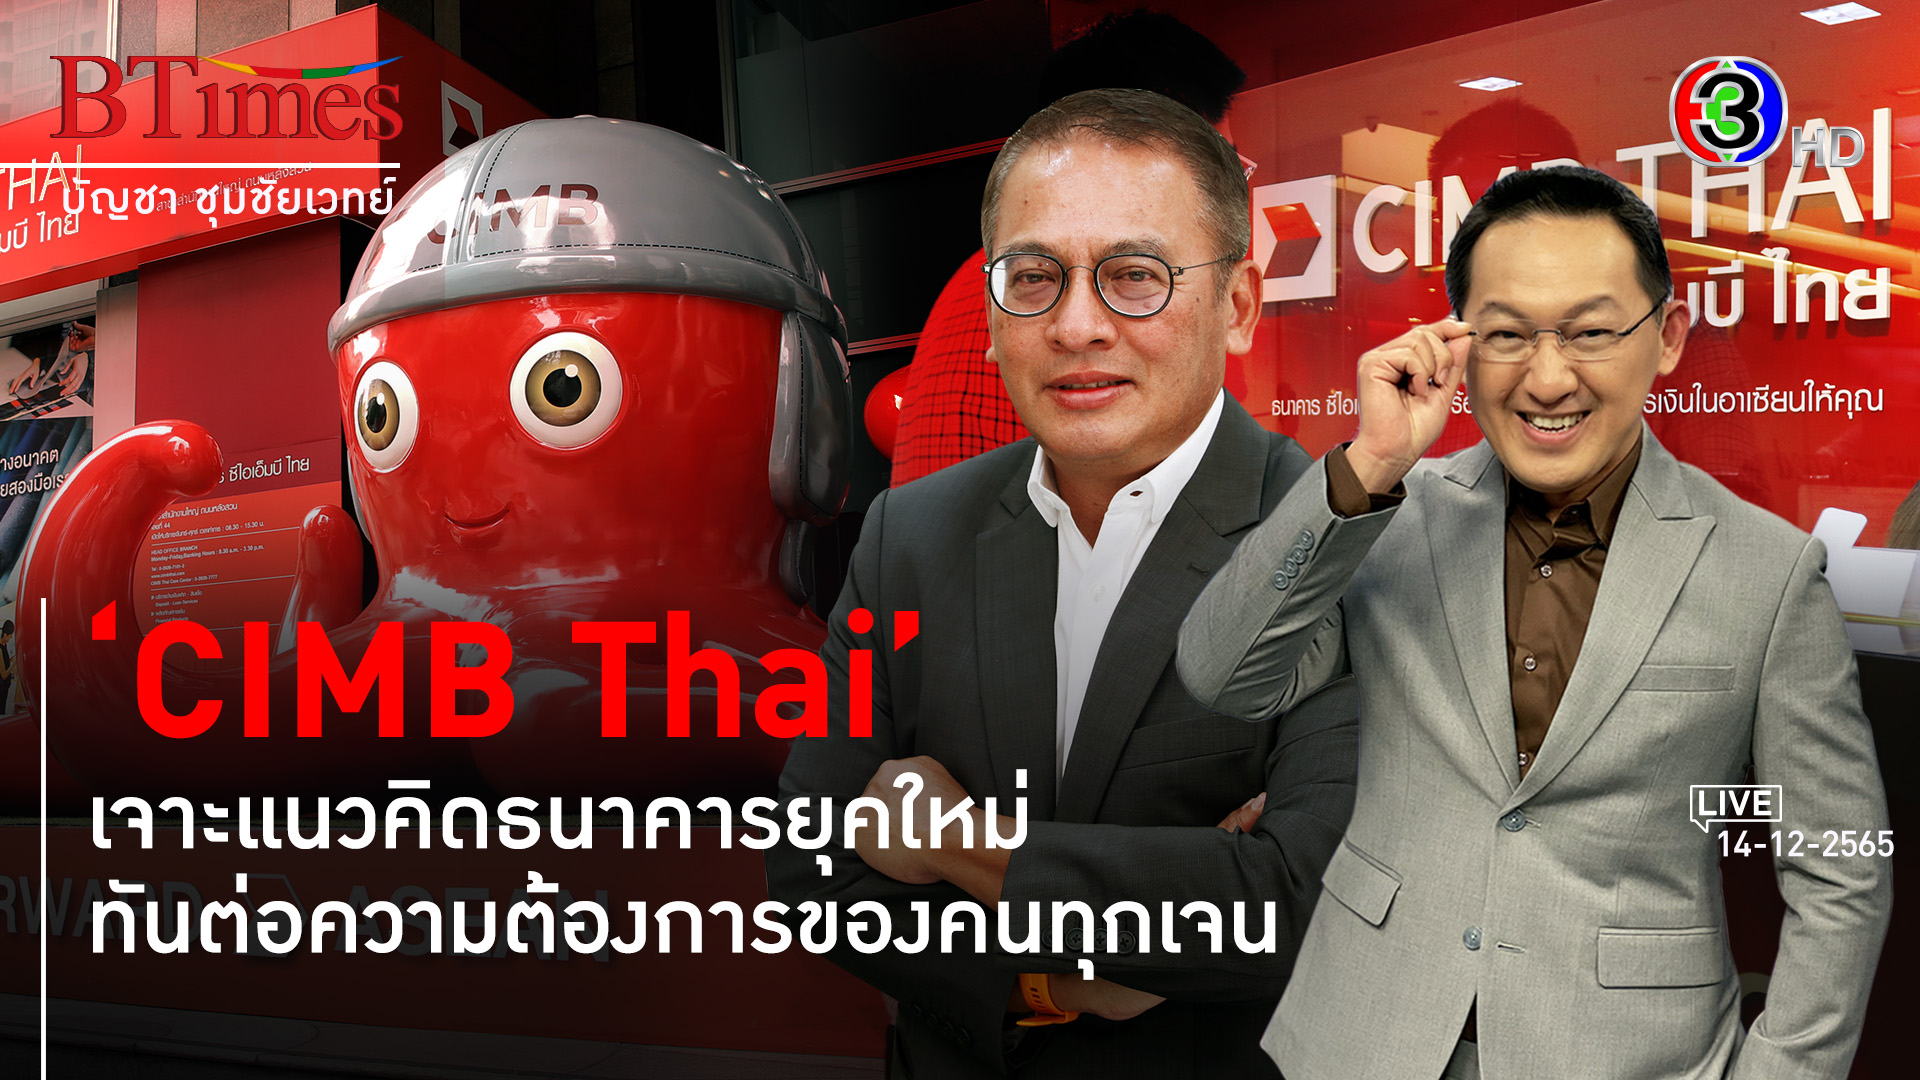 CIMB Thai เปิดมิติธนาคารเคียงคู่คนไทยยุคใหม่ l 14 ธ.ค. 65 FULL l BTimes